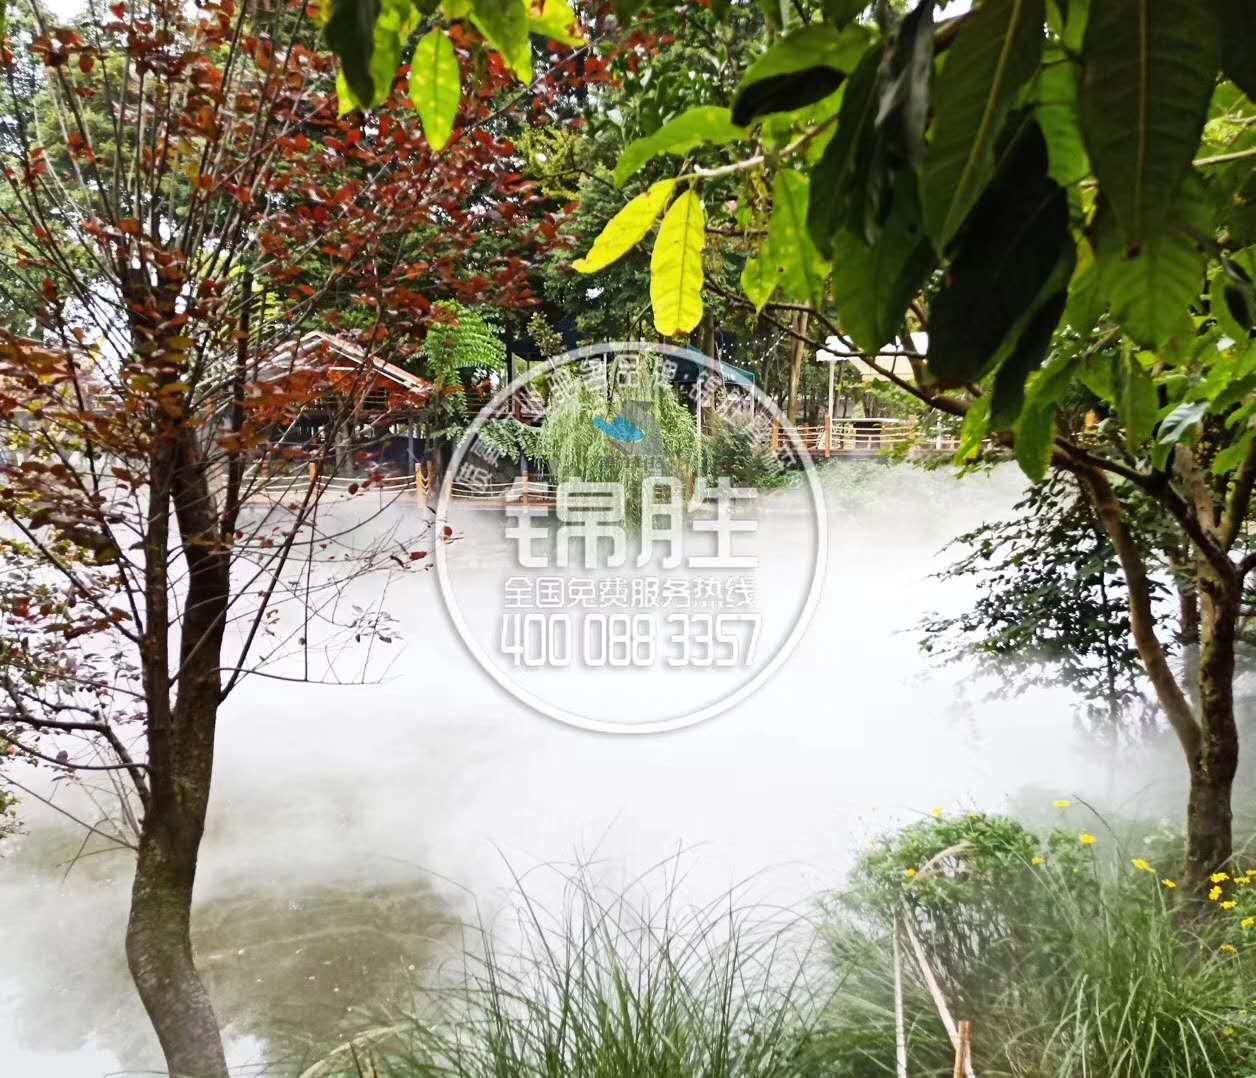 成都华阳酒店喷雾造景园林喷雾景观